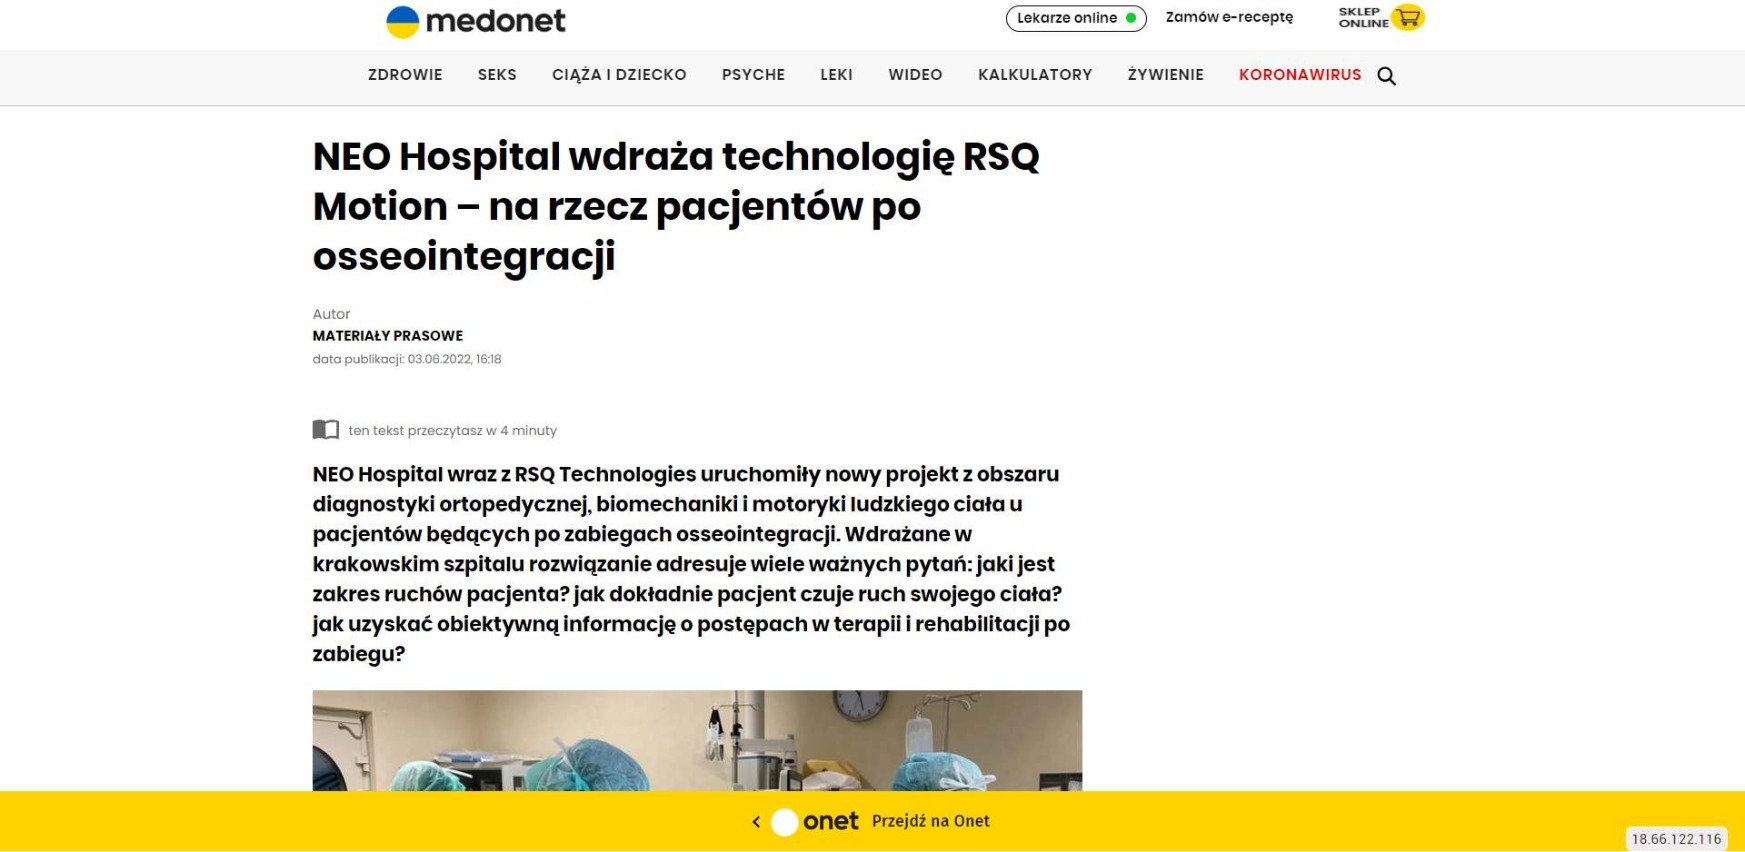 neo hospital wdraza technologie rsq motion na rzecz pacjentow po osseointegracji